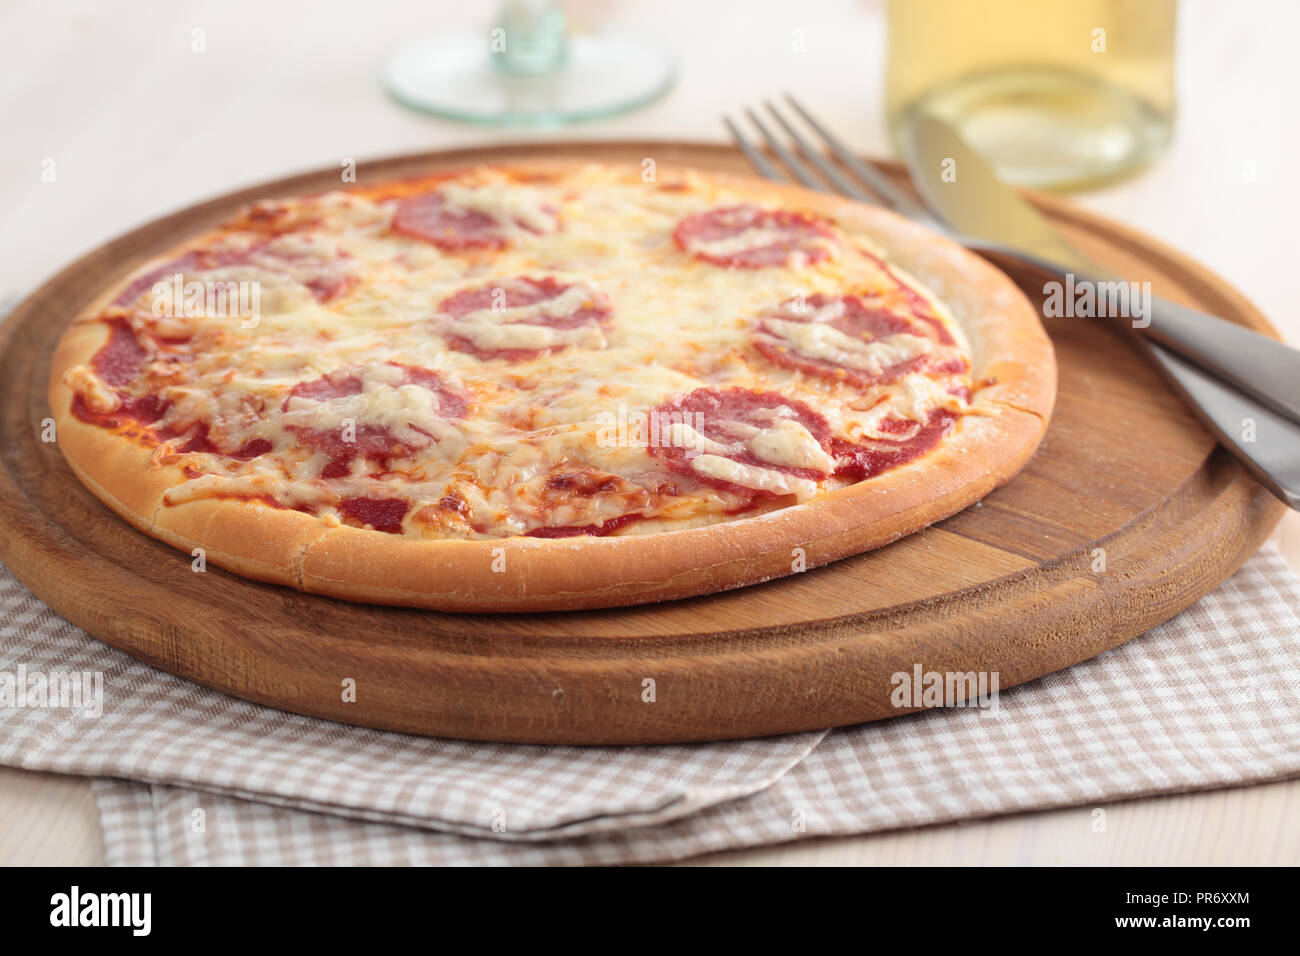 Pizza au salami et fromage sur une planche en bois Banque D'Images